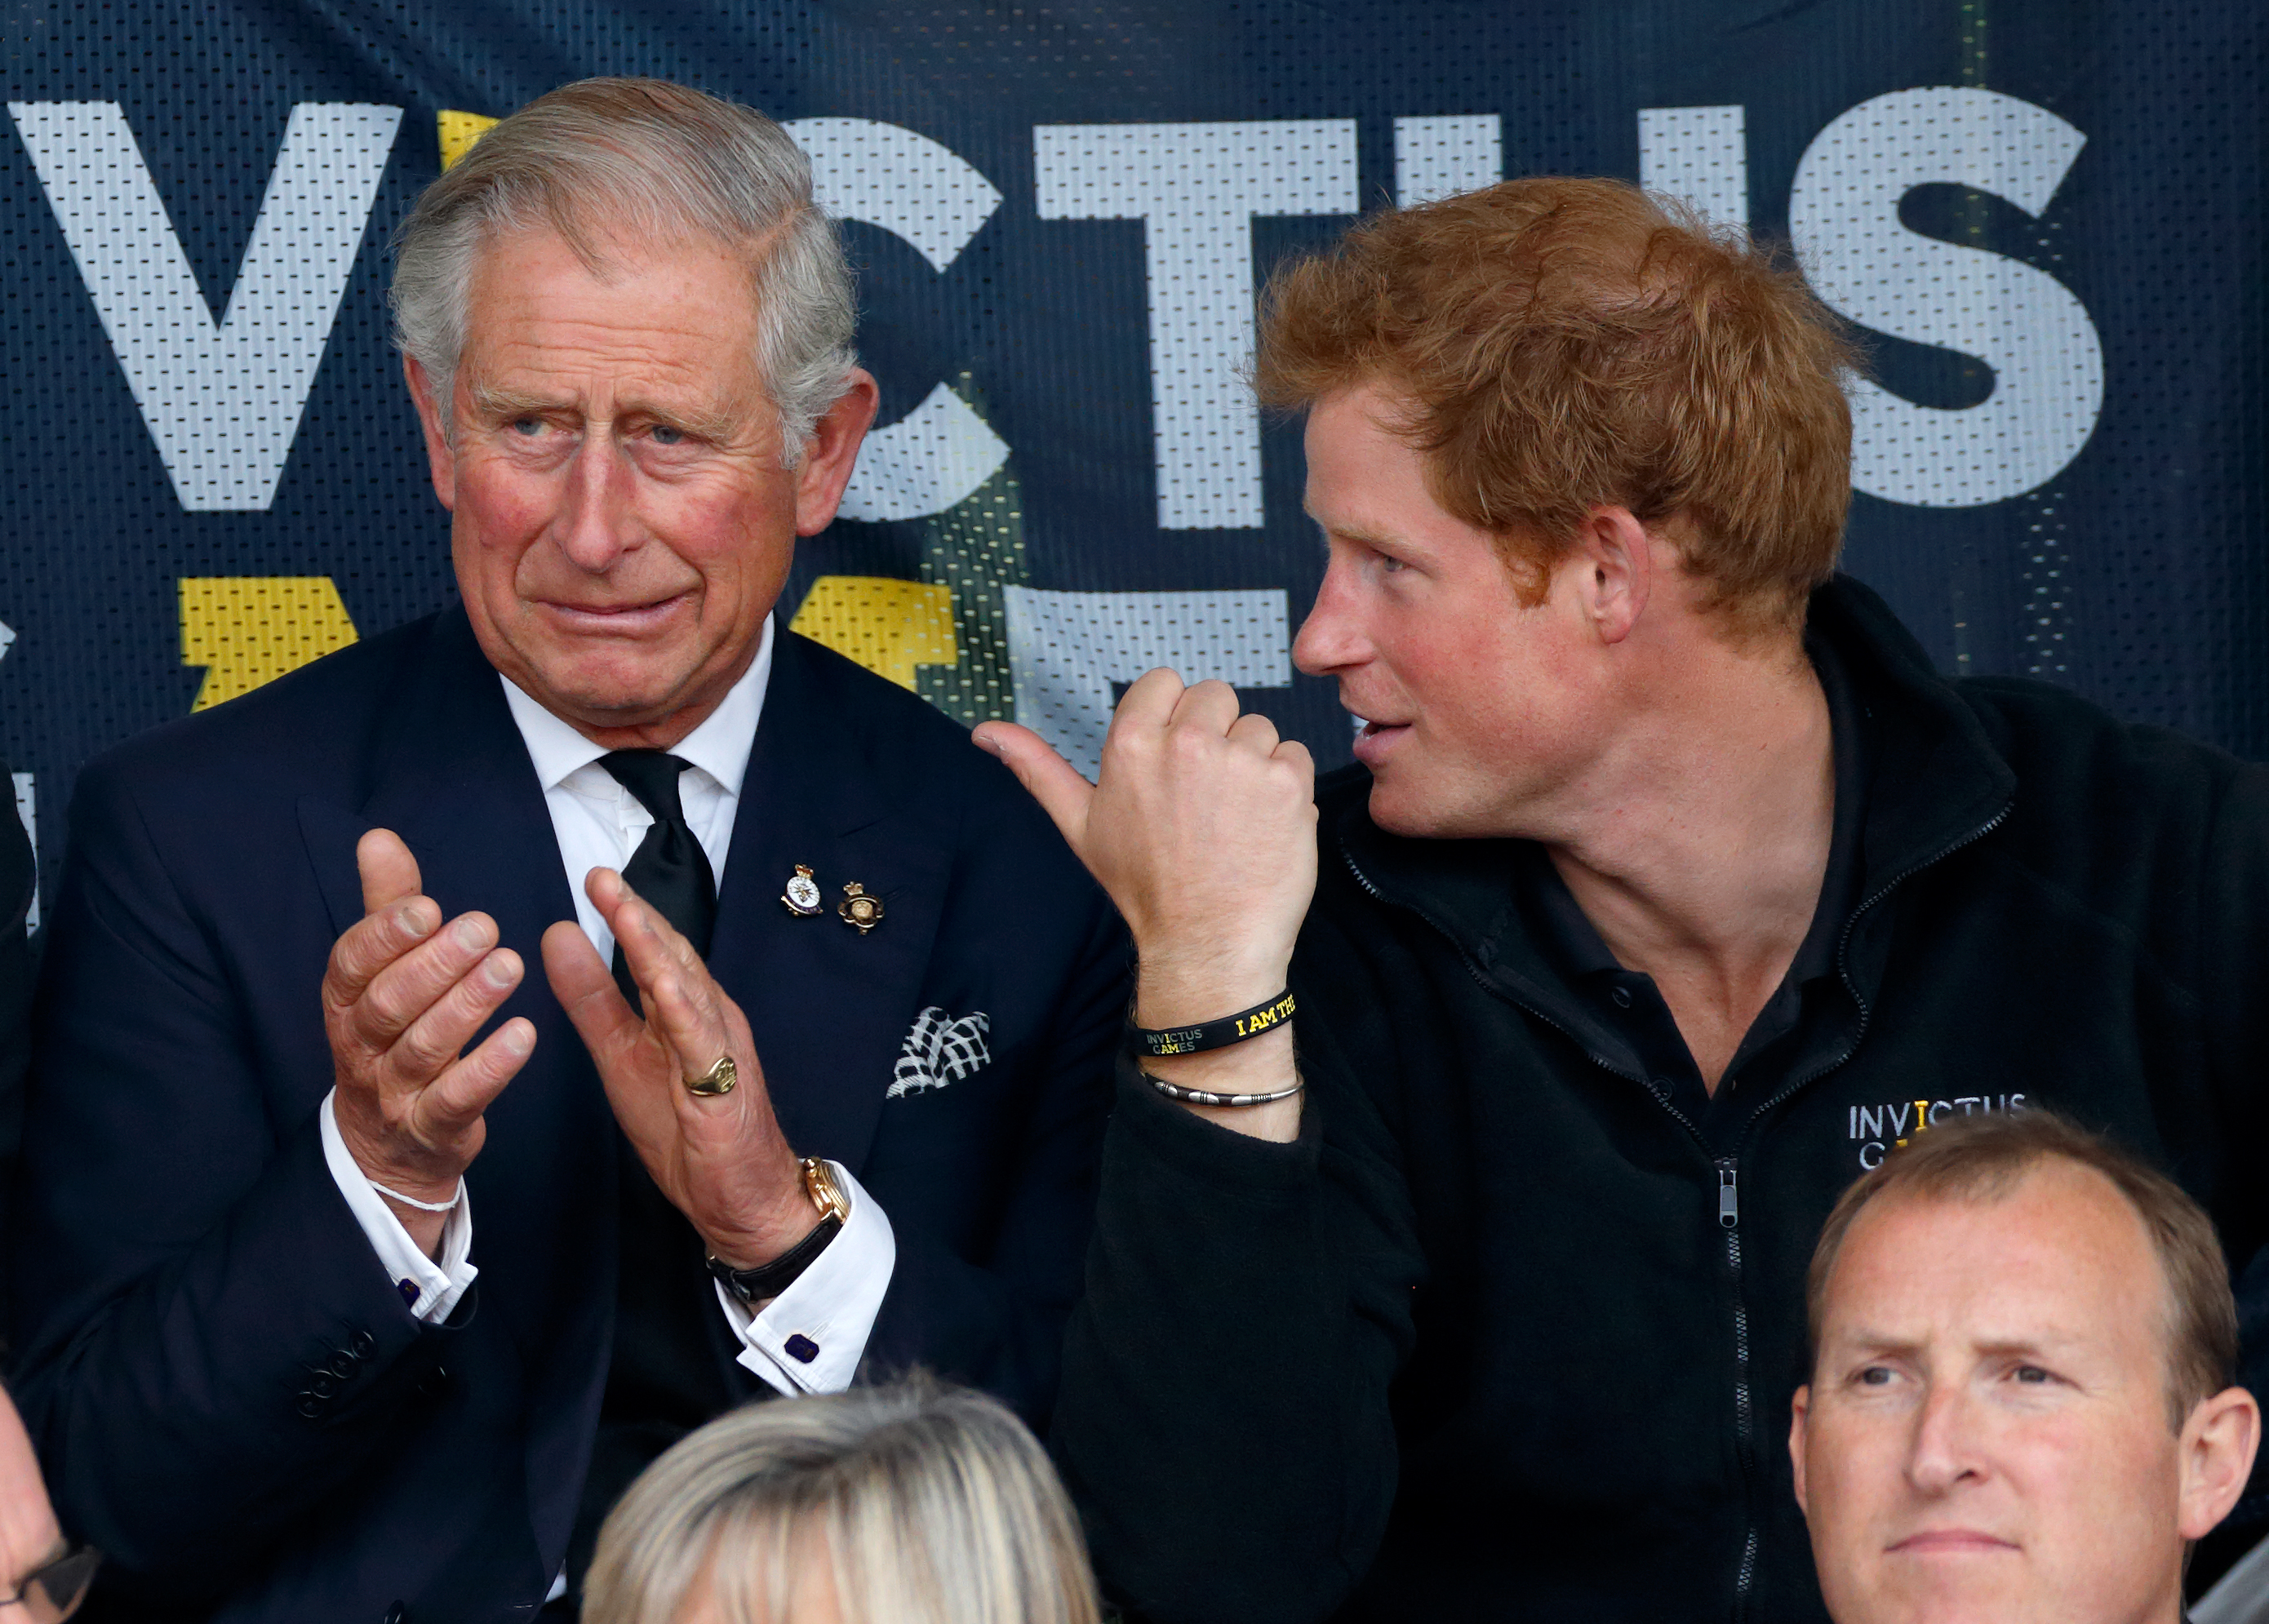 König Charles III. und Prinz Harry während der Invictus Games in London, England am 11. September 2014 | Quelle: Getty Images